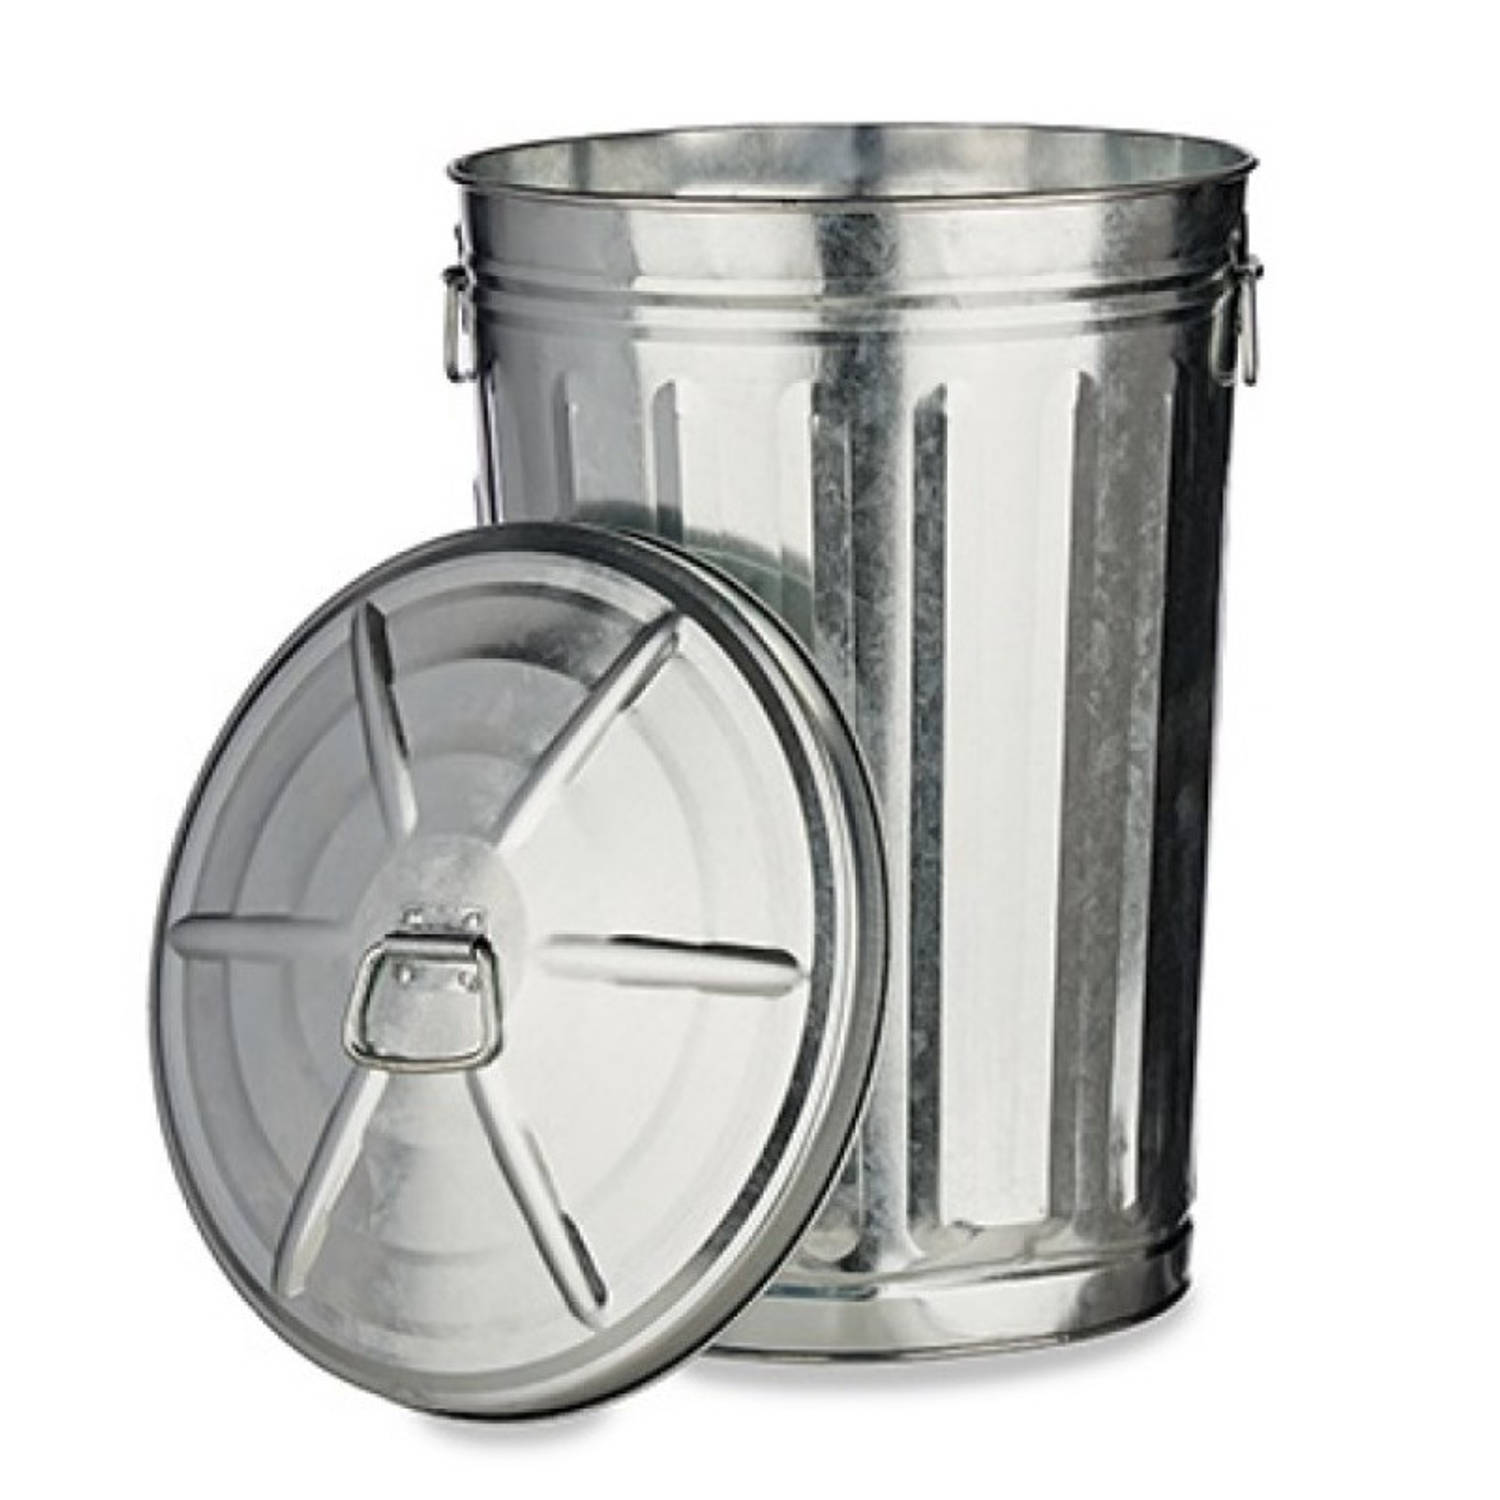 Megalopolis Ontbering omzeilen 2x stuks vuilnisbakken/vuilnisemmers zilver met deksel 17 liter 36 cm metaal  - Prullenbakken | Blokker